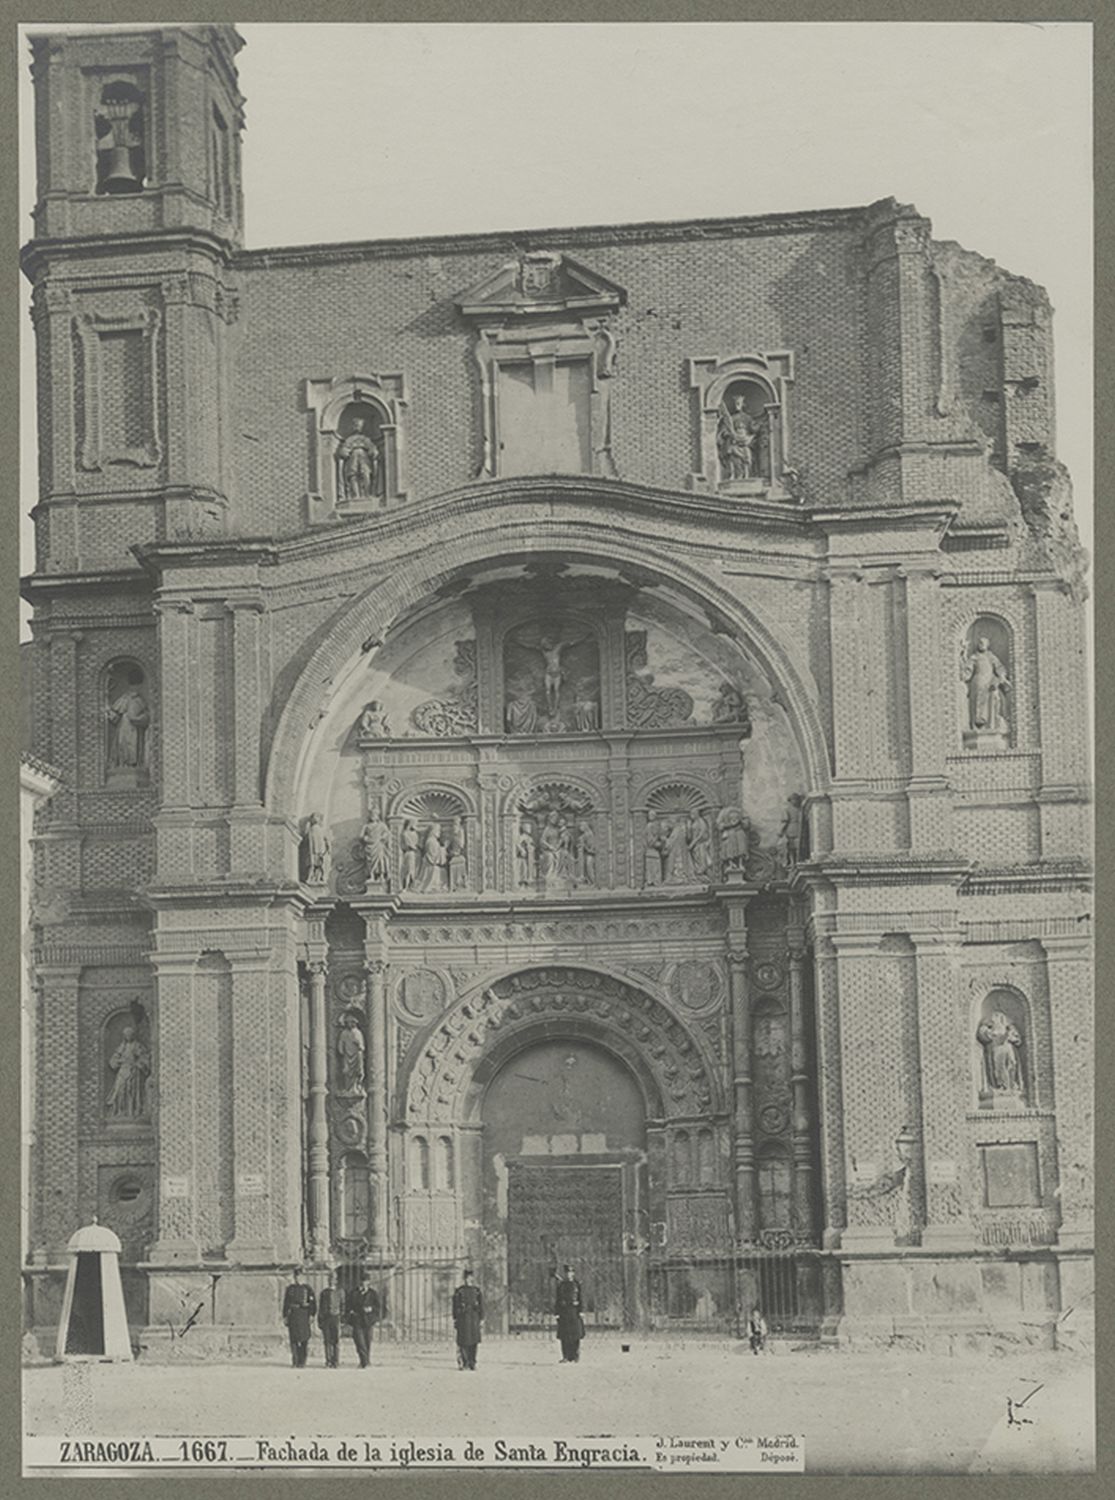 Basílica de Santa Engracia (Zaragoza)